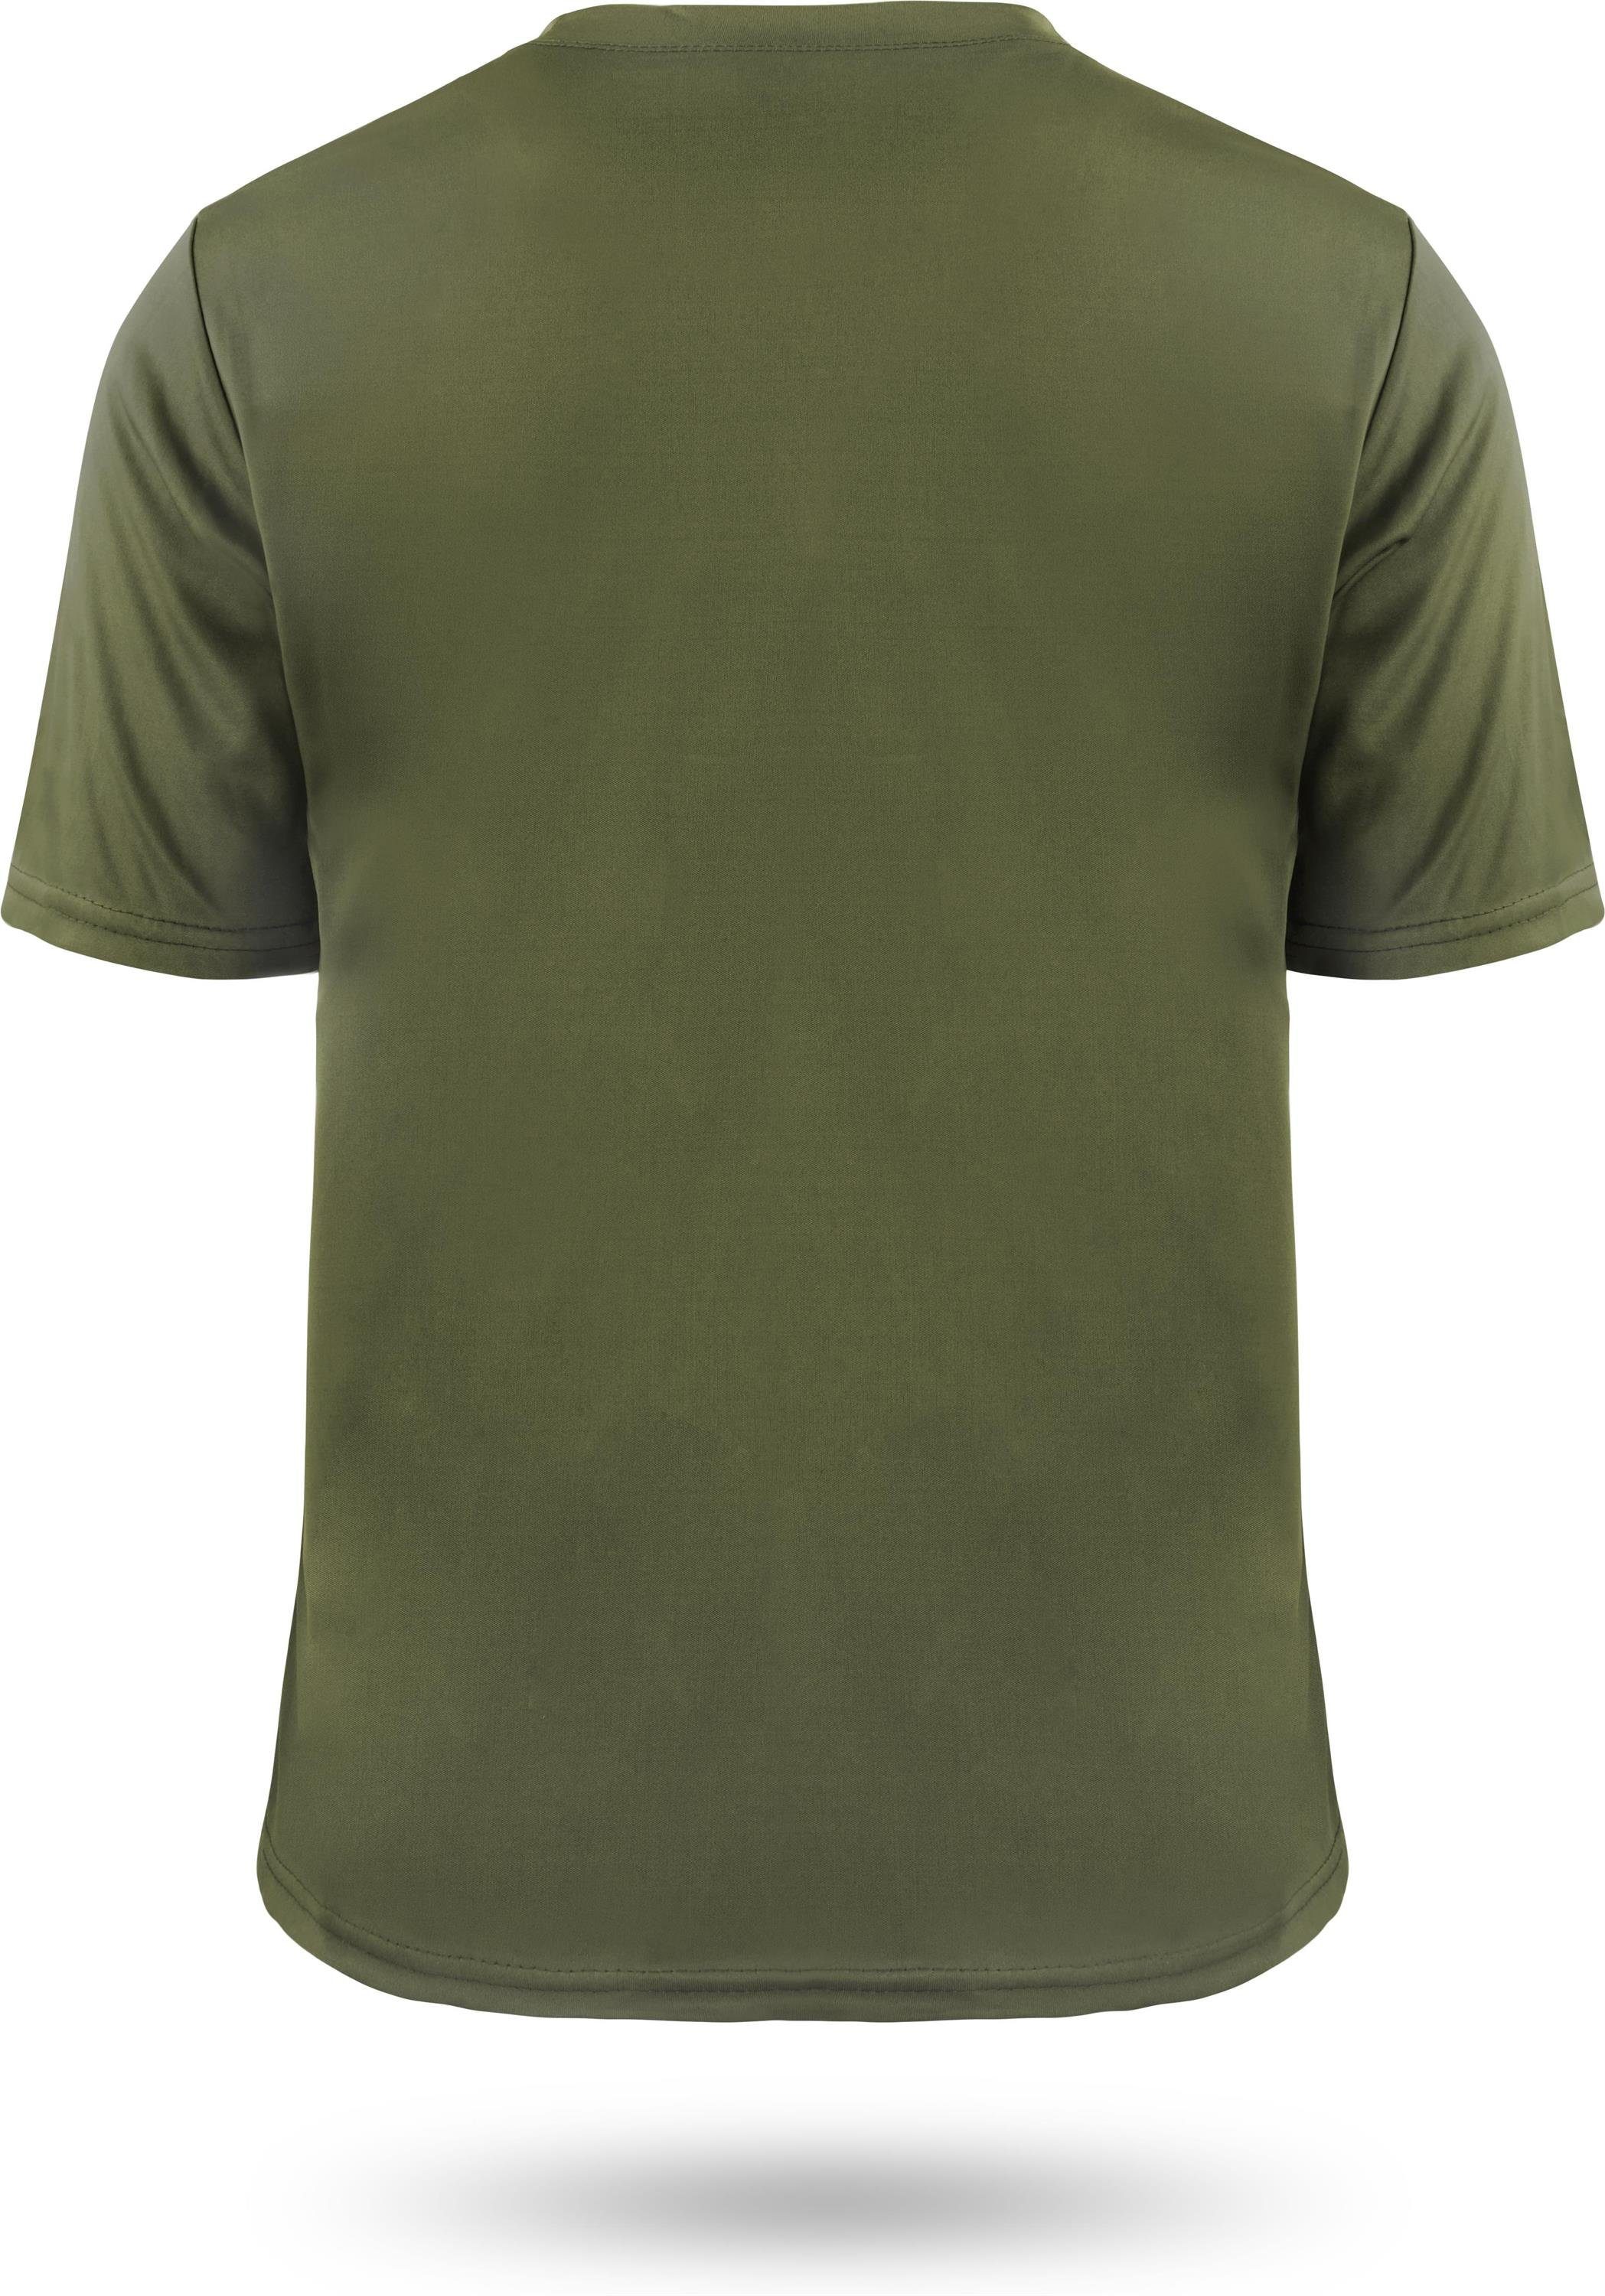 Agra Grün mt Shirt Cooling-Material Kurzarm Funktions-Sport Fitness T-Shirt Funktionsshirt Sportswear normani Herren